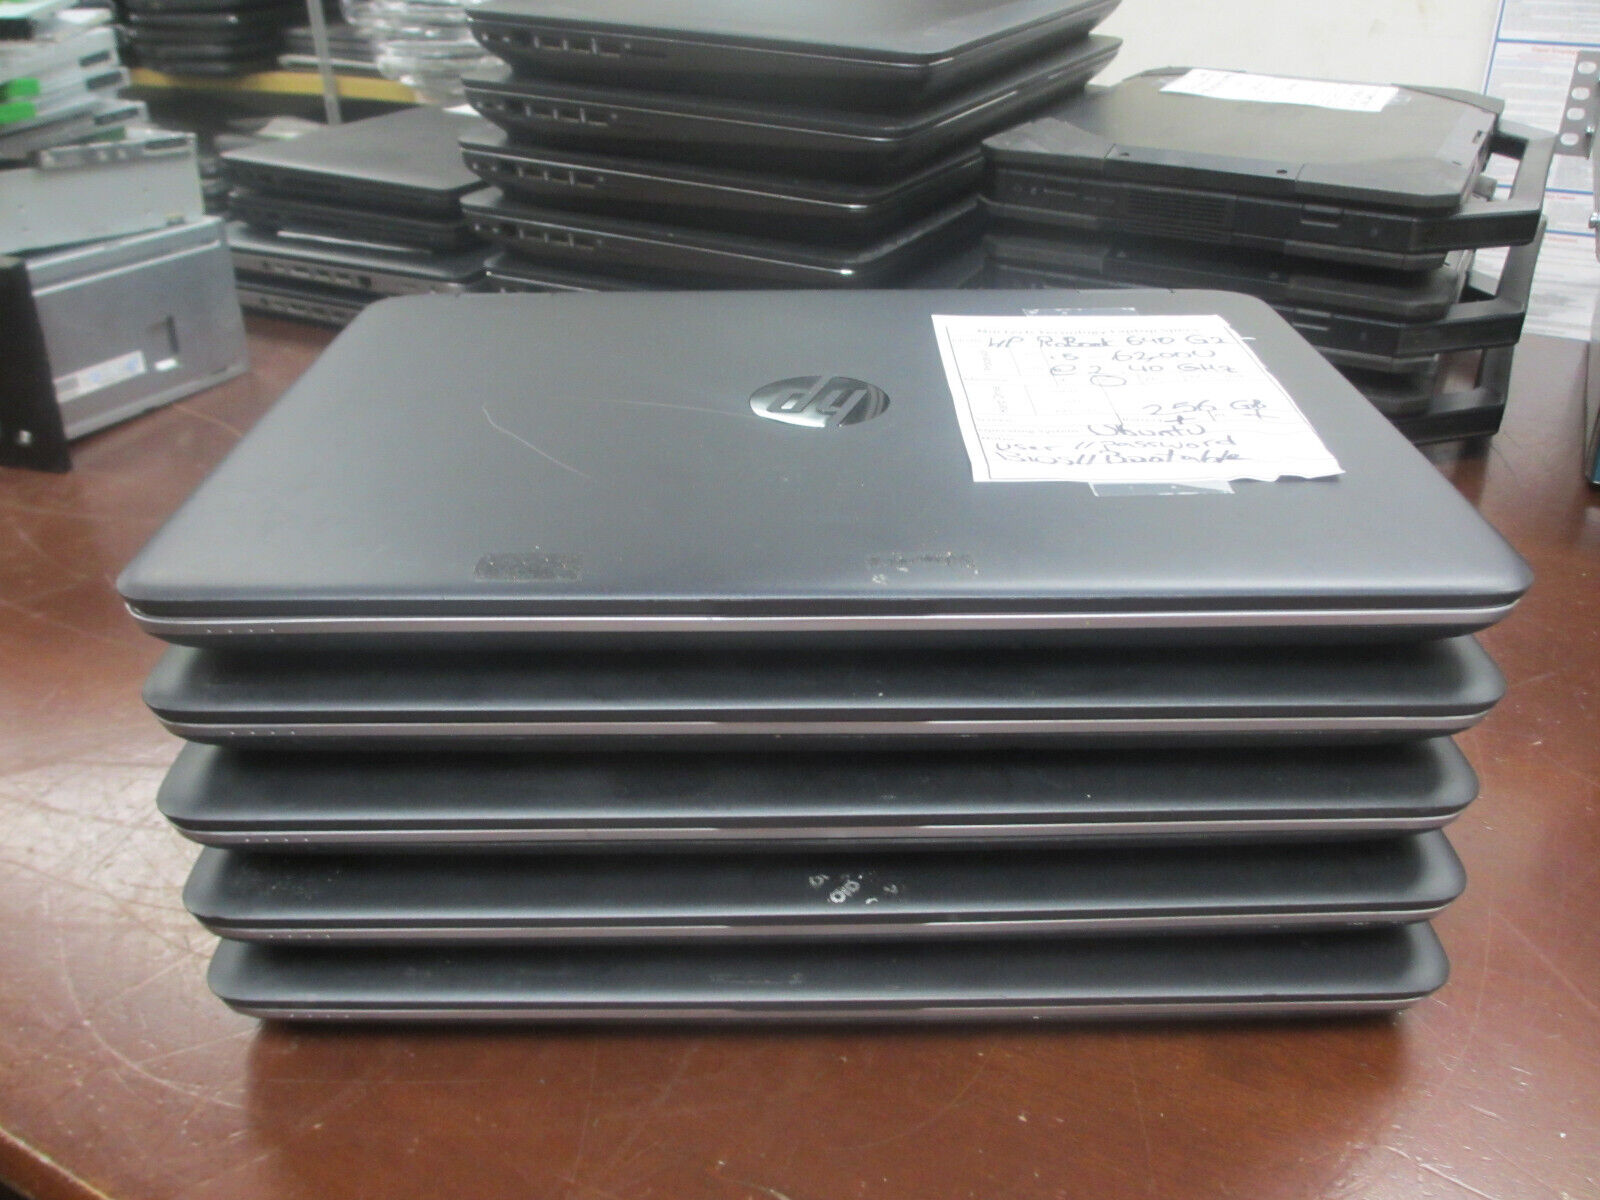 Lot of 5 HP ProBook 640 G2 i5-6300U 2.40GHz 8GB 256GB Ubuntu Laptop w/ AC/BIOS